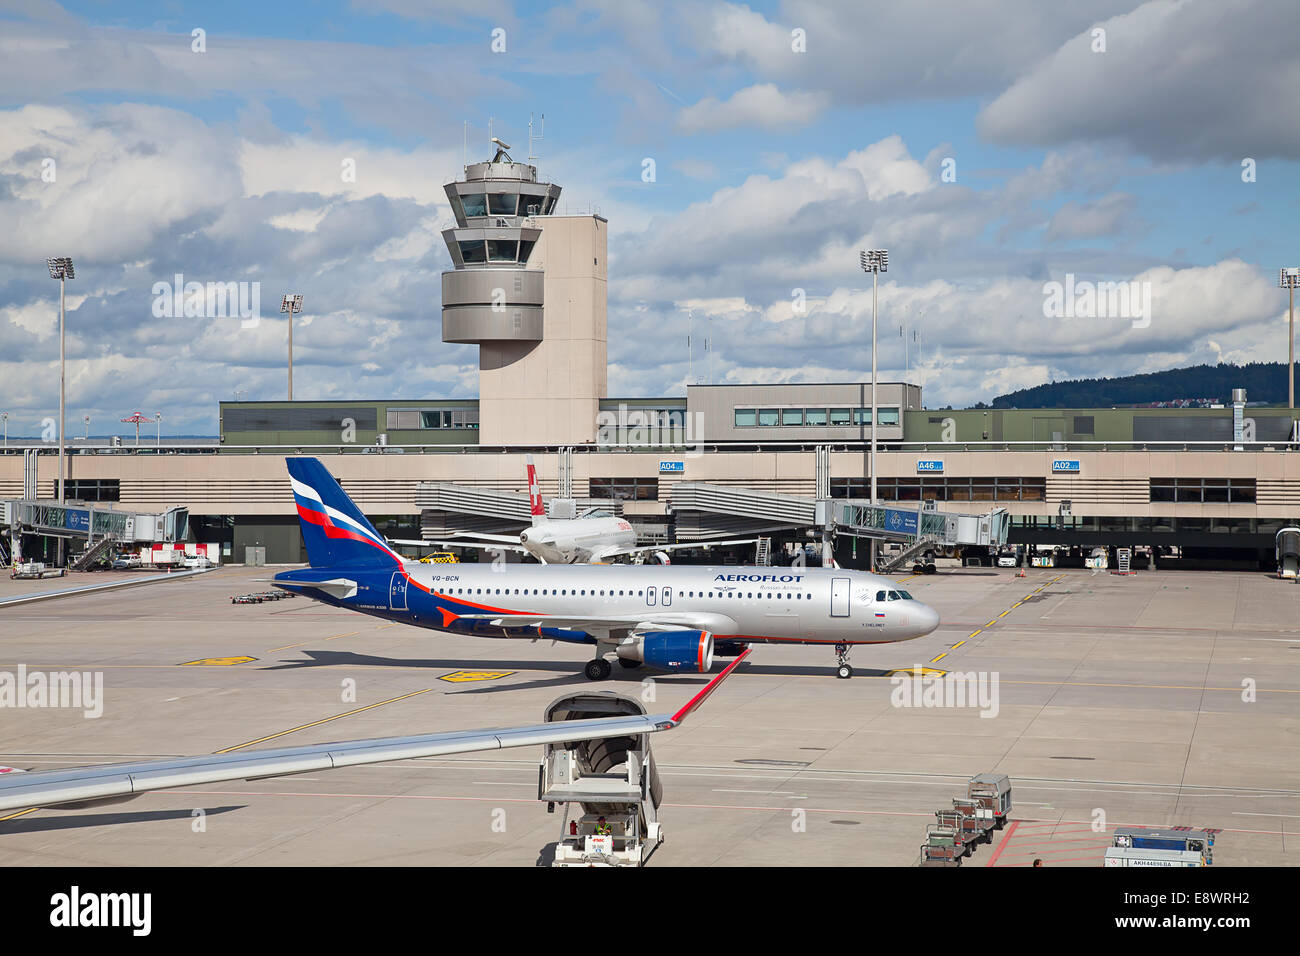 ZURICH - 21 SEPTEMBRE : Aeroflot Boeing 737 après l'atterrissage le 21 septembre 2014 à Zurich, Suisse. Zurich International Airp Banque D'Images